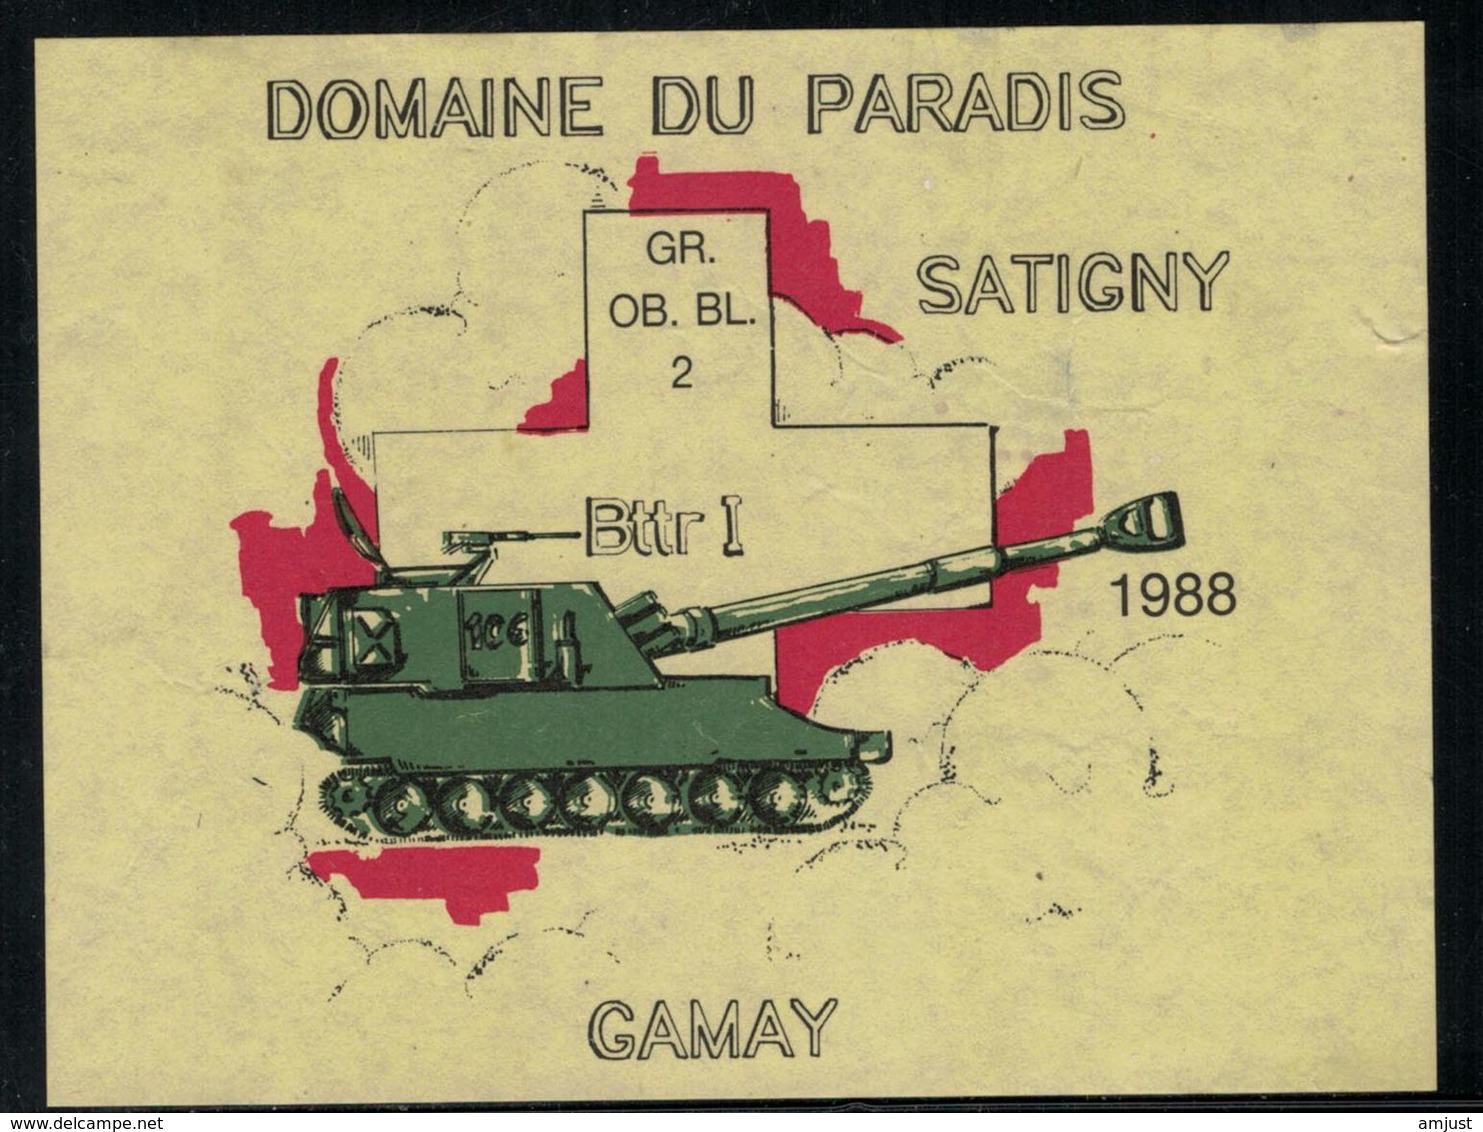 Etiquette De Vin // Gamay De Satigny, Militaire, GR. OB. BL. 2 1988 - Militaire